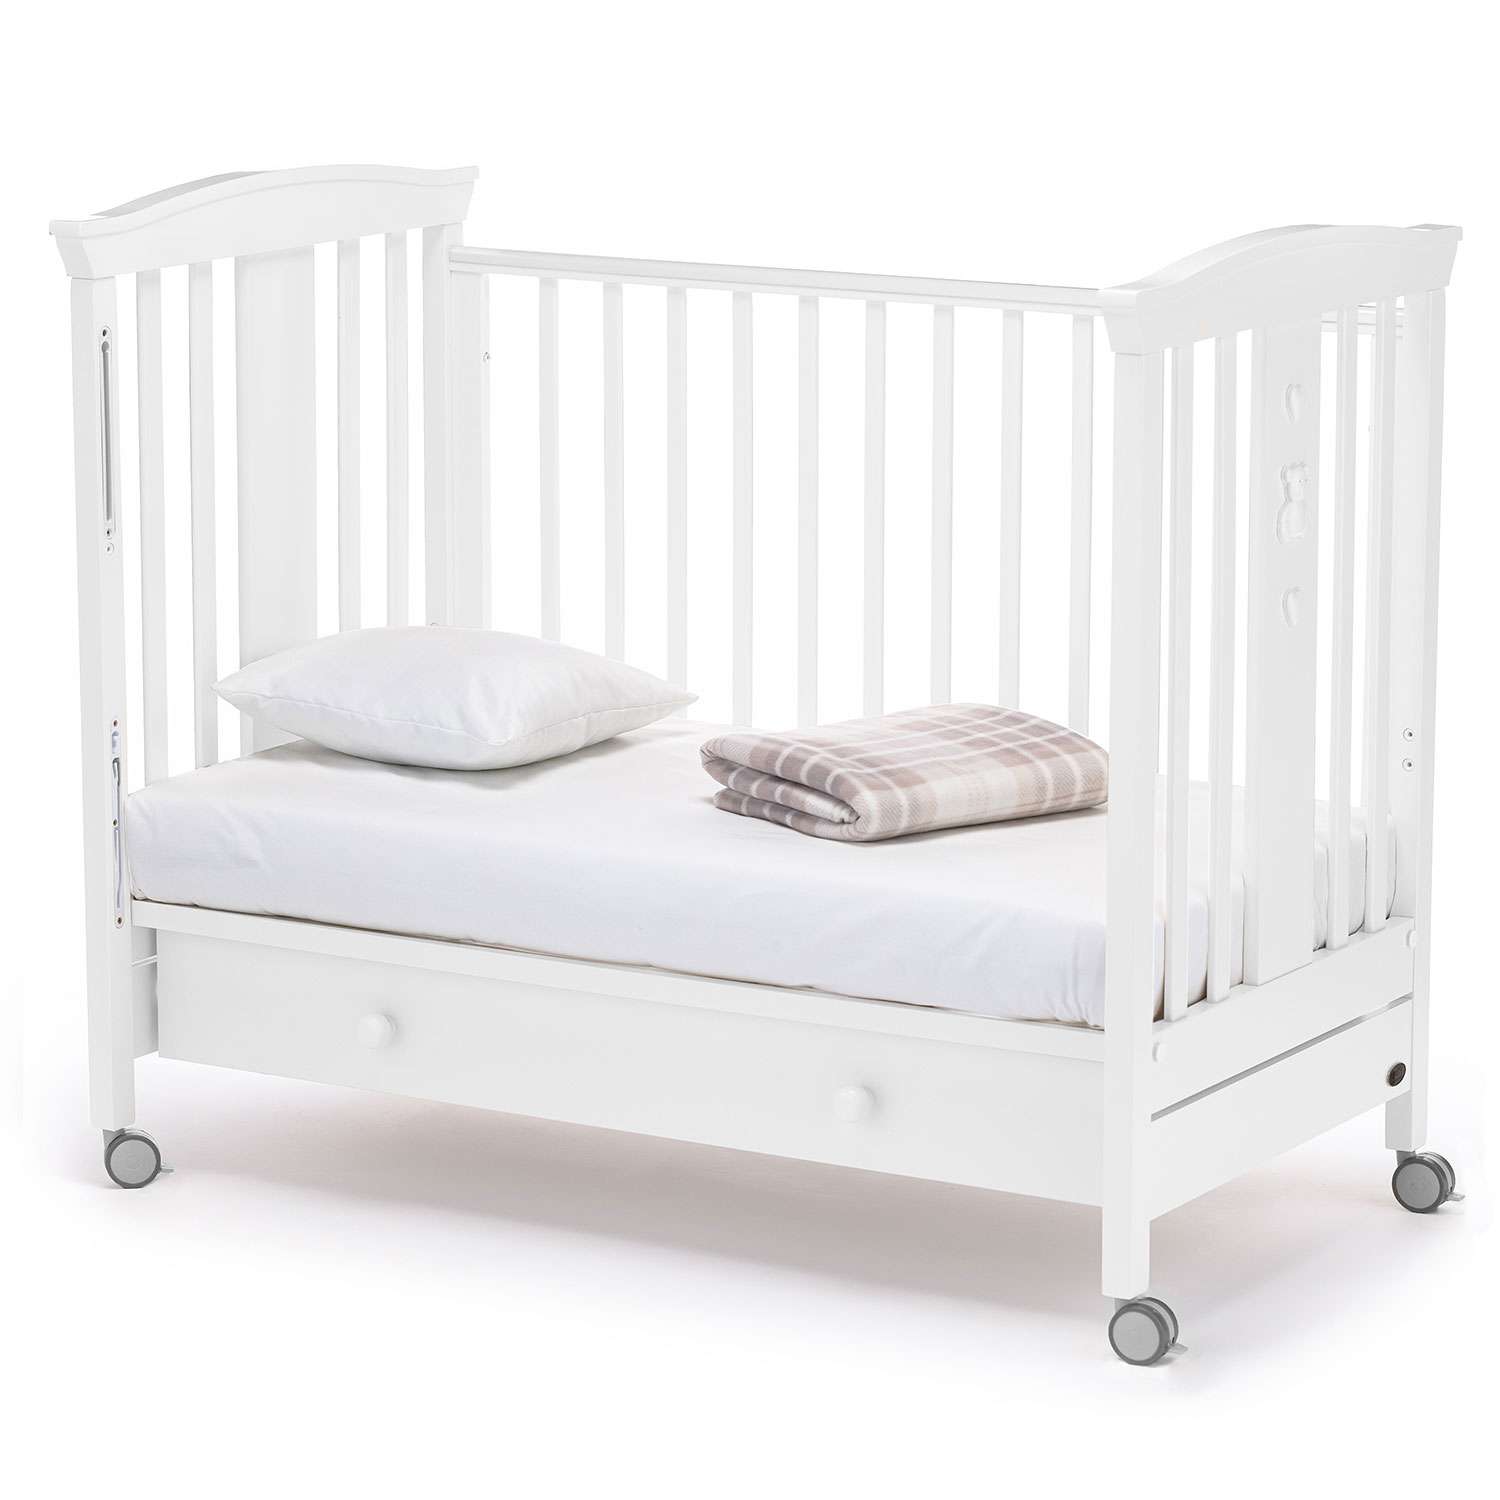 Детская кроватка Nuovita прямоугольная, без маятника (белый) - фото 12